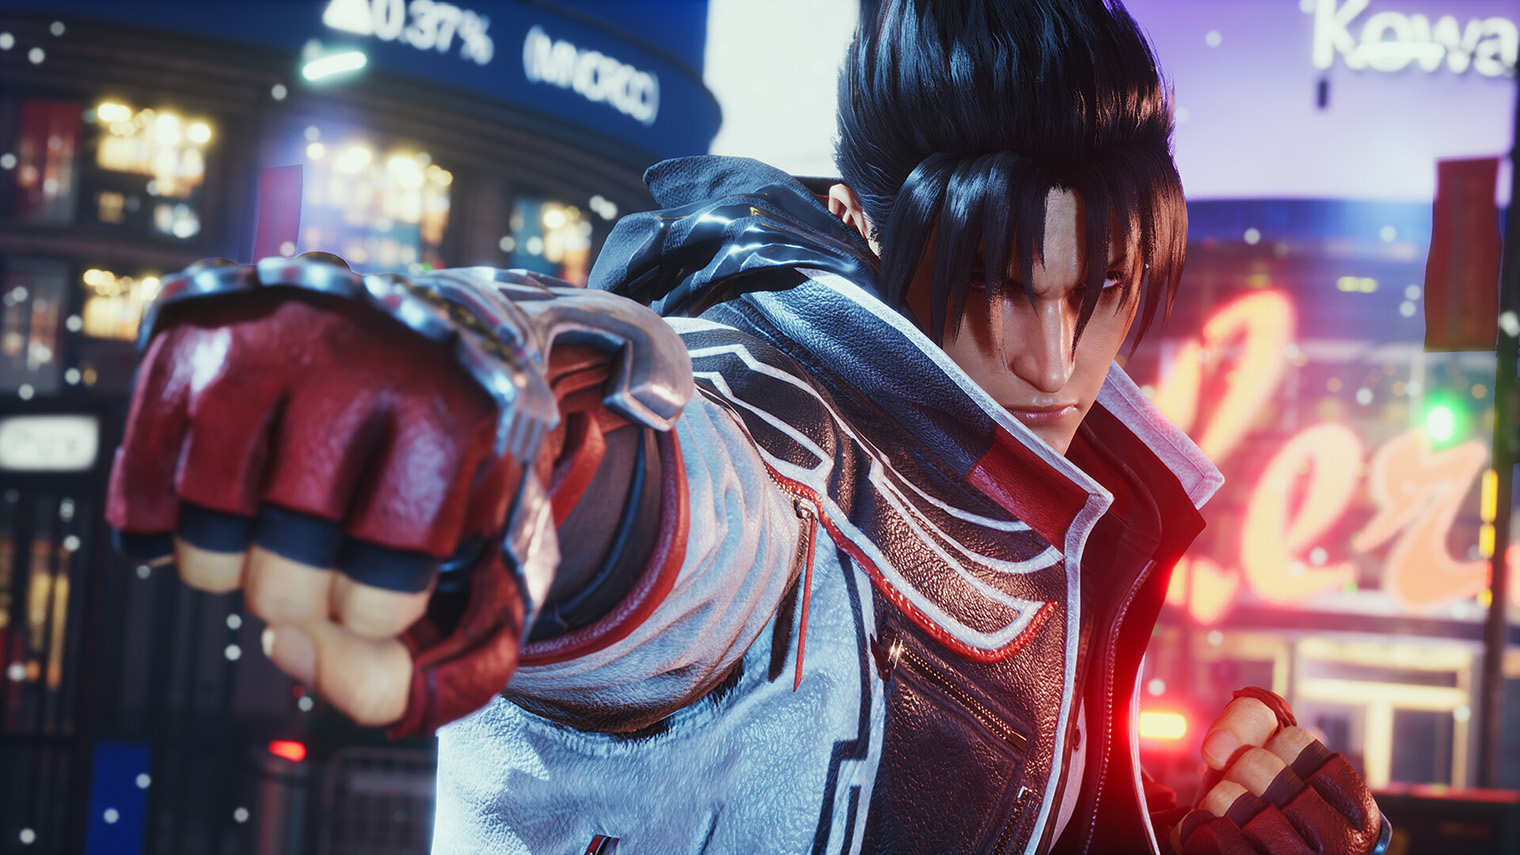 Tekken 8 впечатляет технологичной графикой. У кожи, причесок и одежды бойцов высокая детализация. Кадр: Bandai Namco